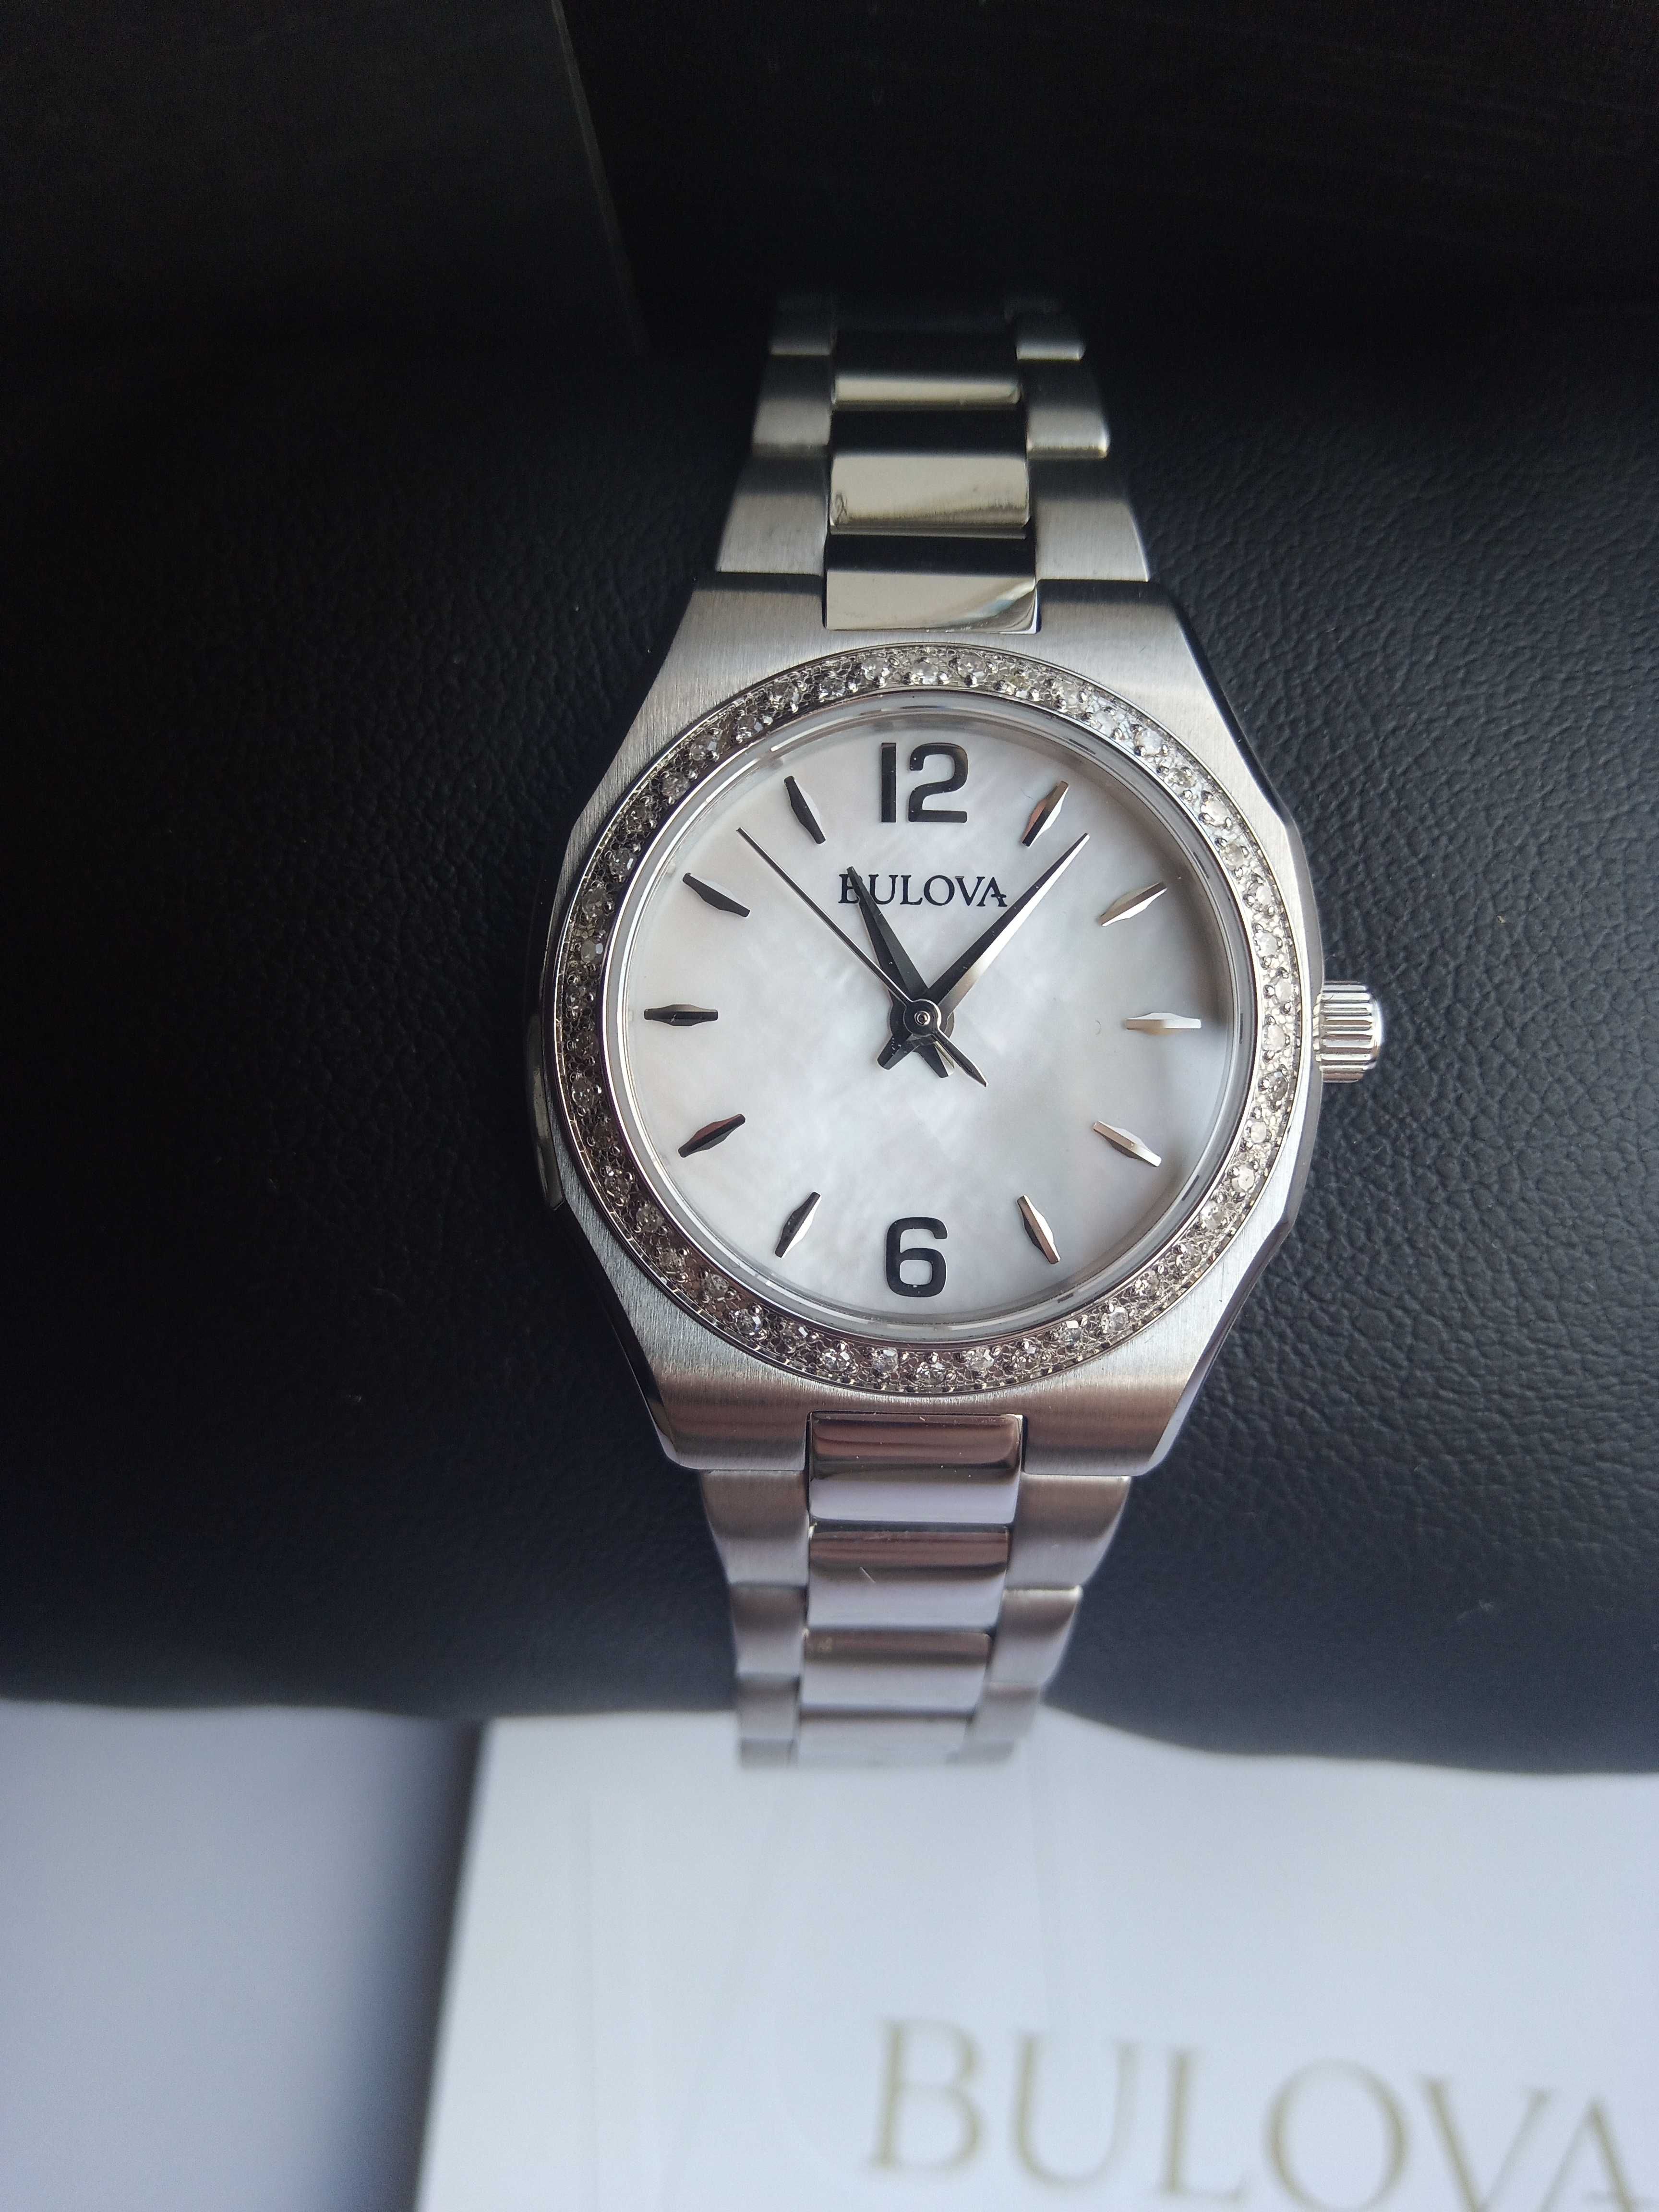 Женские часы с 46 бриллиантами Bulova 96R199. Шикарный подарок девушке